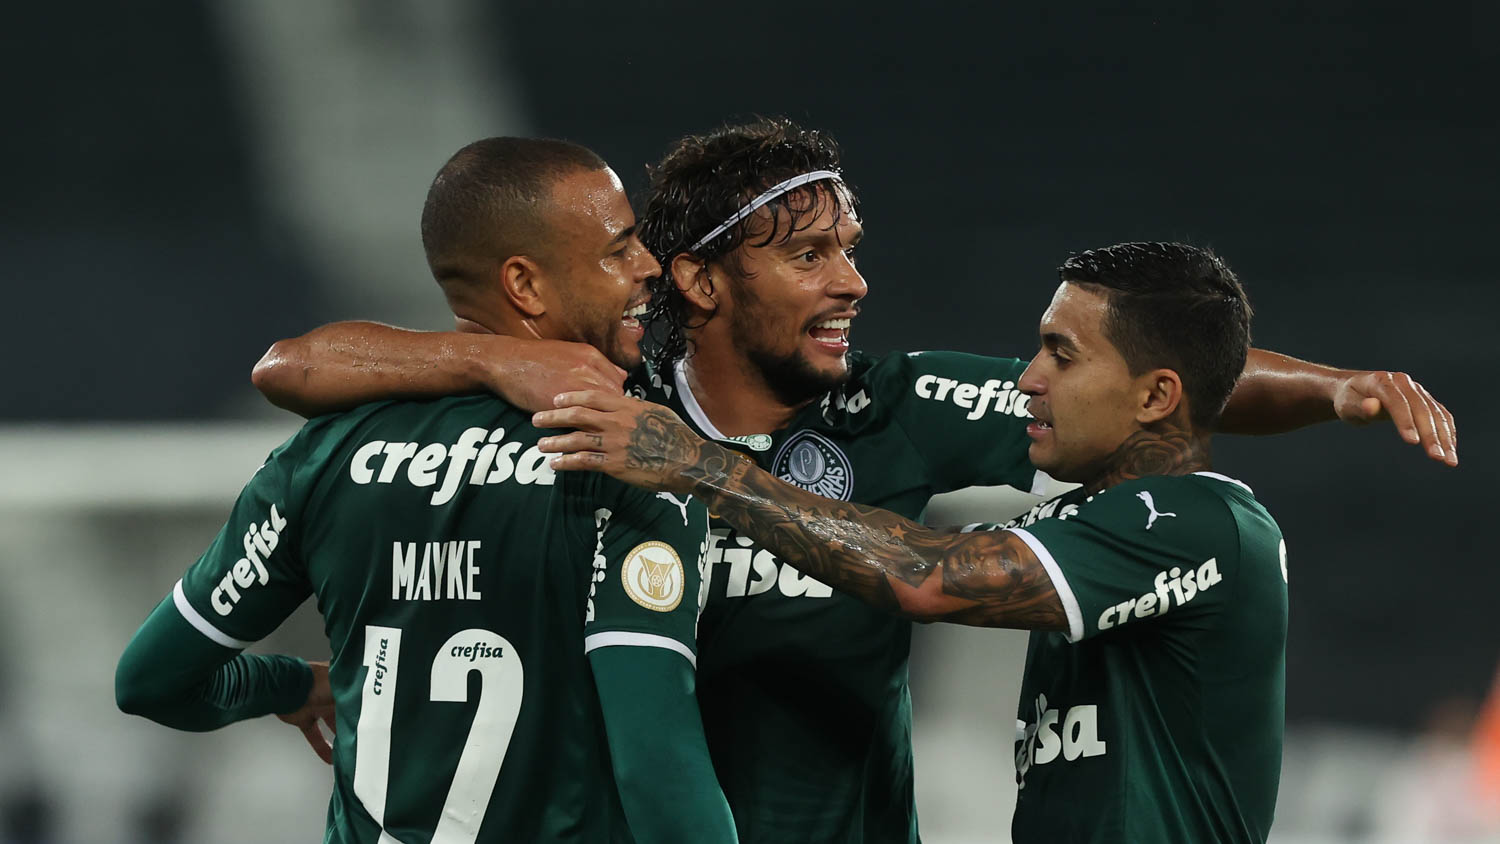 Empate sem golos no Botafogo e Palmeira